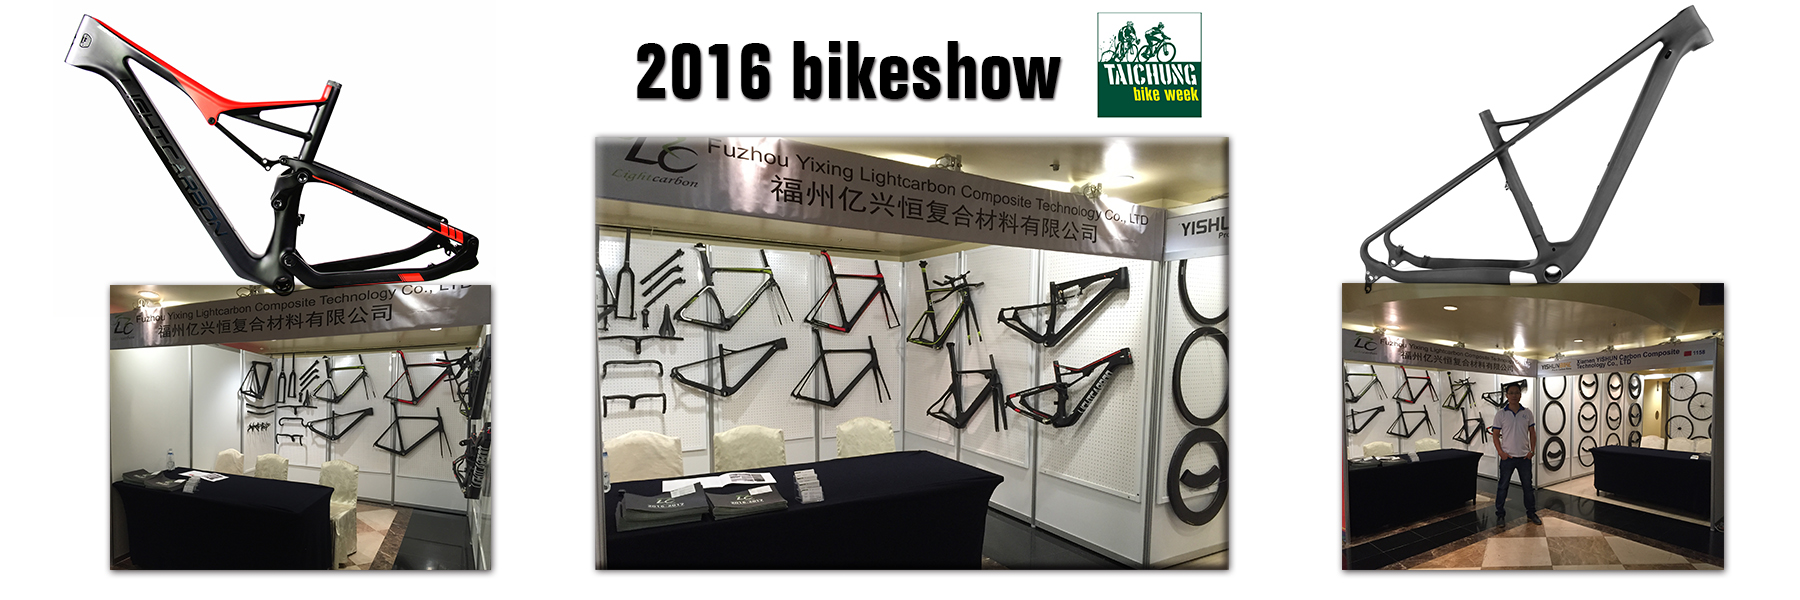 semana de bicicletas de carbono ligero de taichung